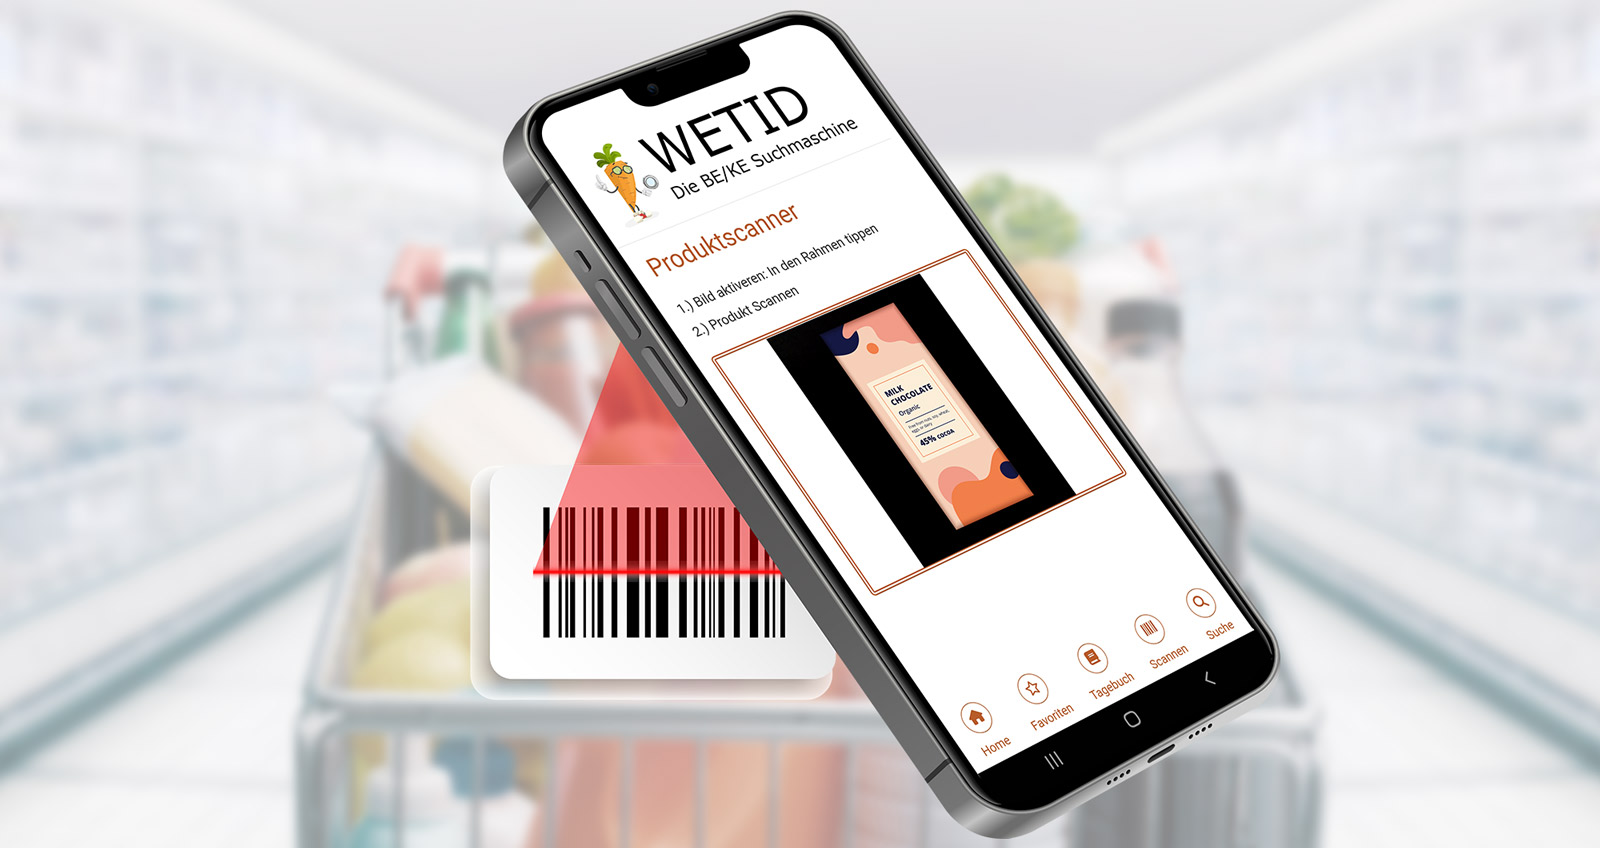 Vor einem Einkaufswagen ein Smartphone, welches einen Produktcode scannt, auf dem Display ist die App WETID geöffnet